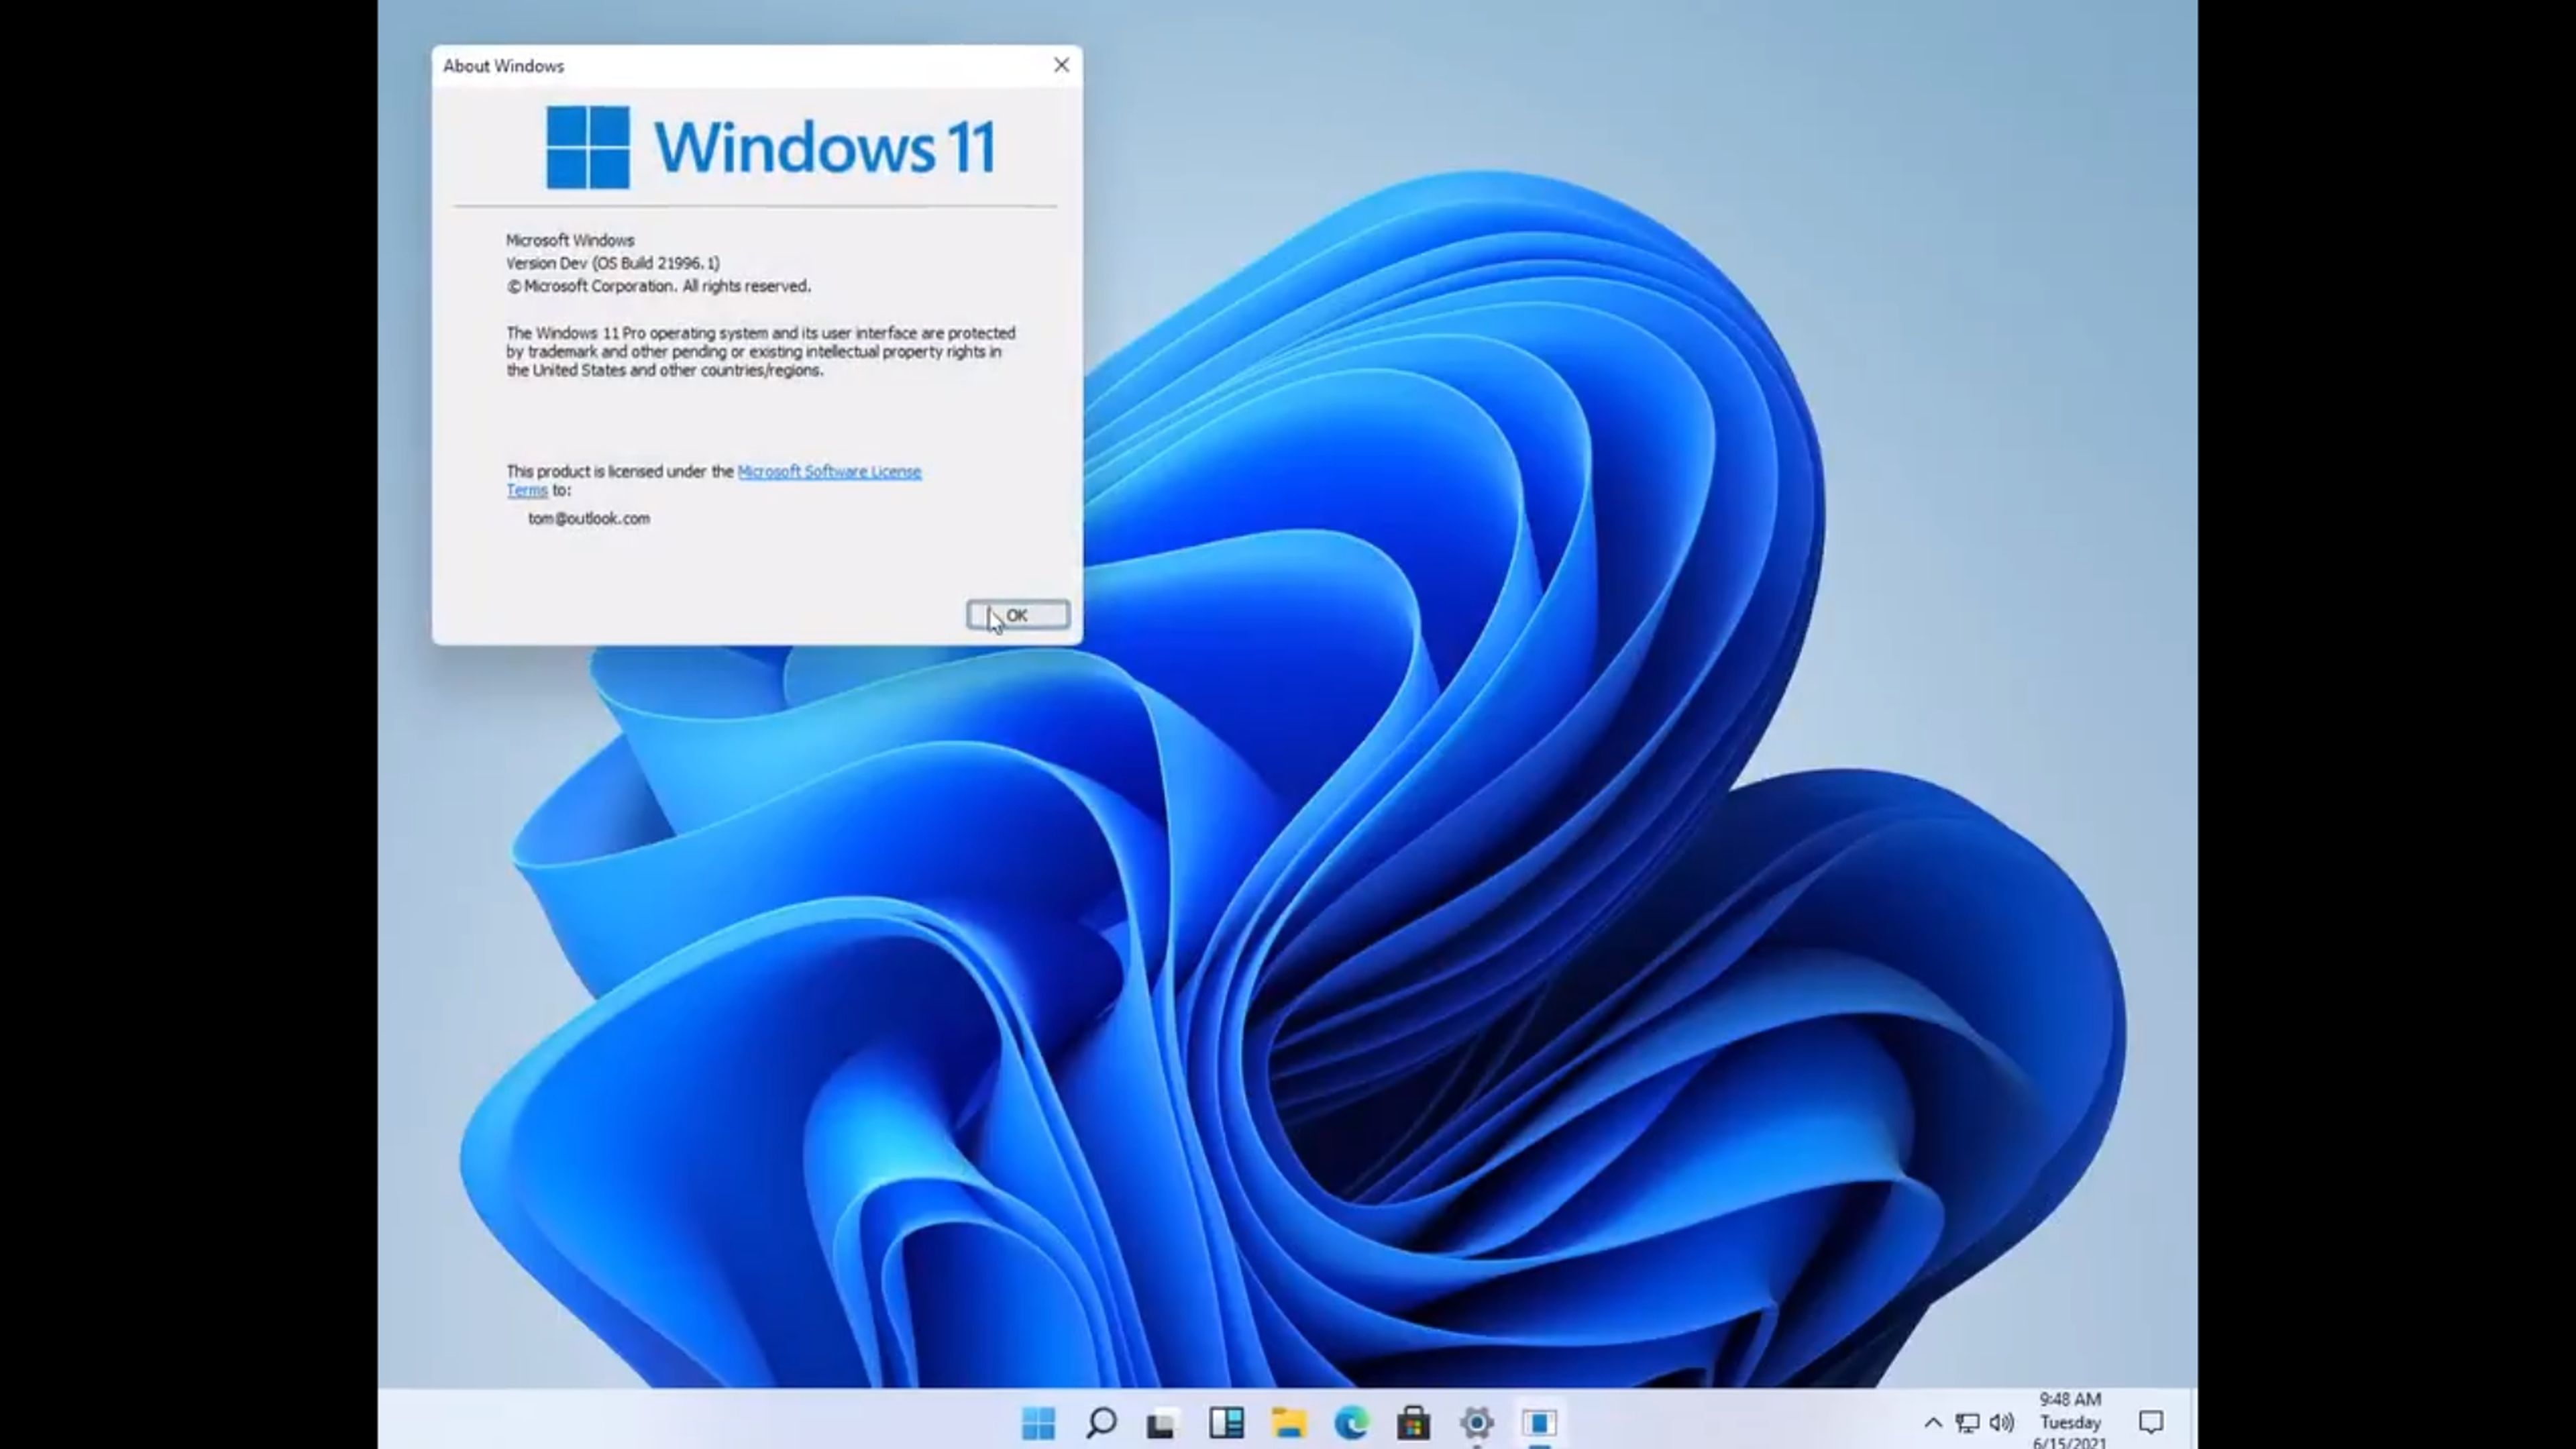 Windows 11: Se filtra un vídeo con las primeras imágenes y muchas novedades